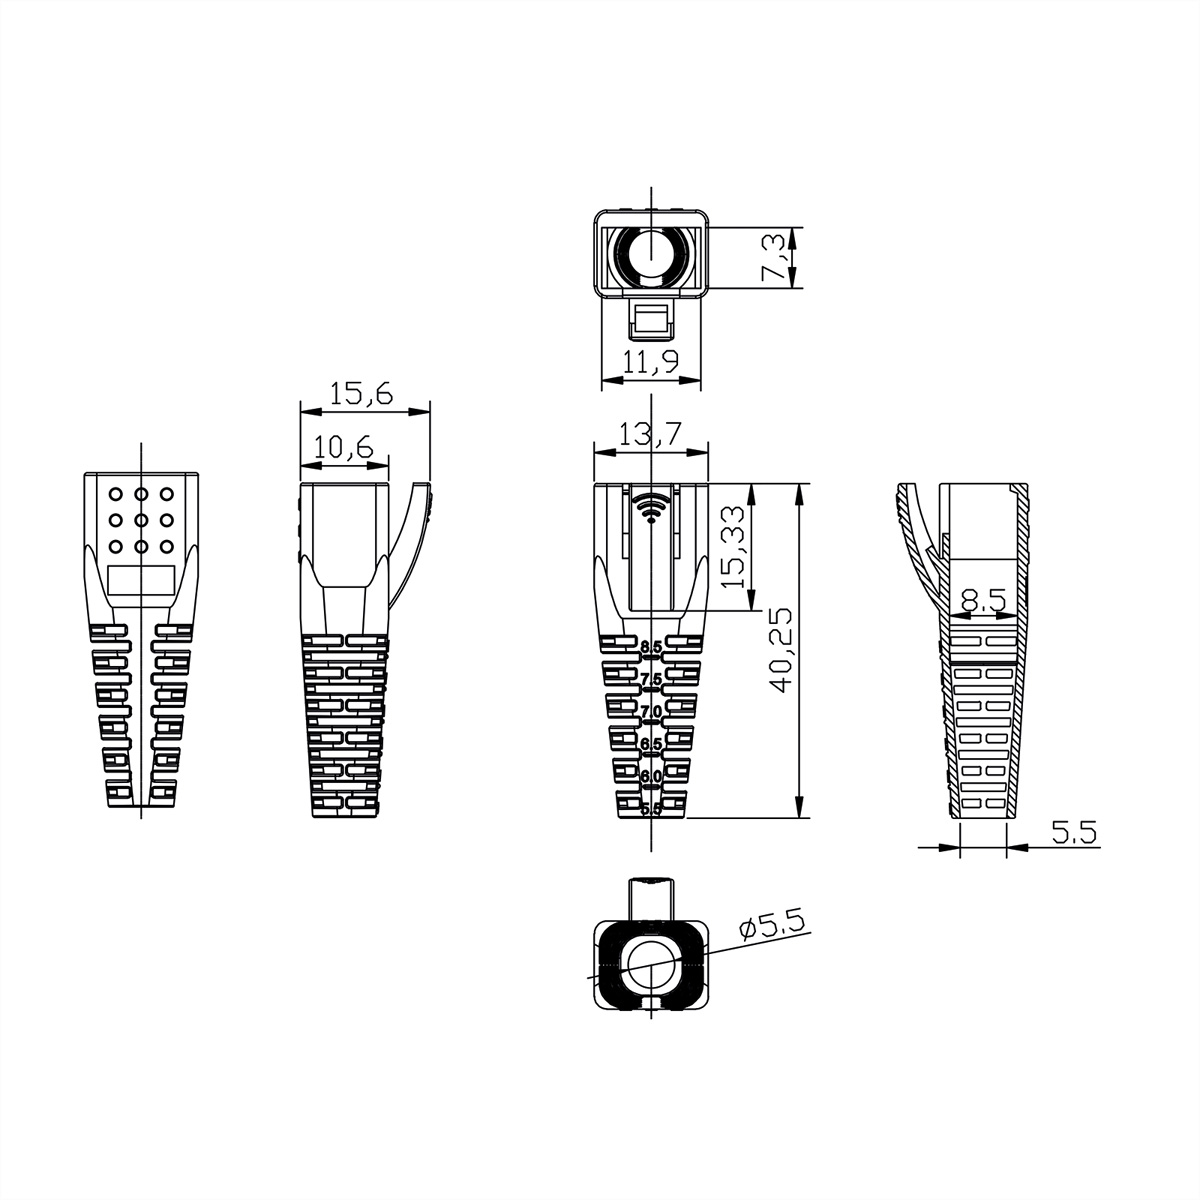 ROLINE Knickschutztülle für Plugs Modular für RJ-45 Tüllen RJ-45